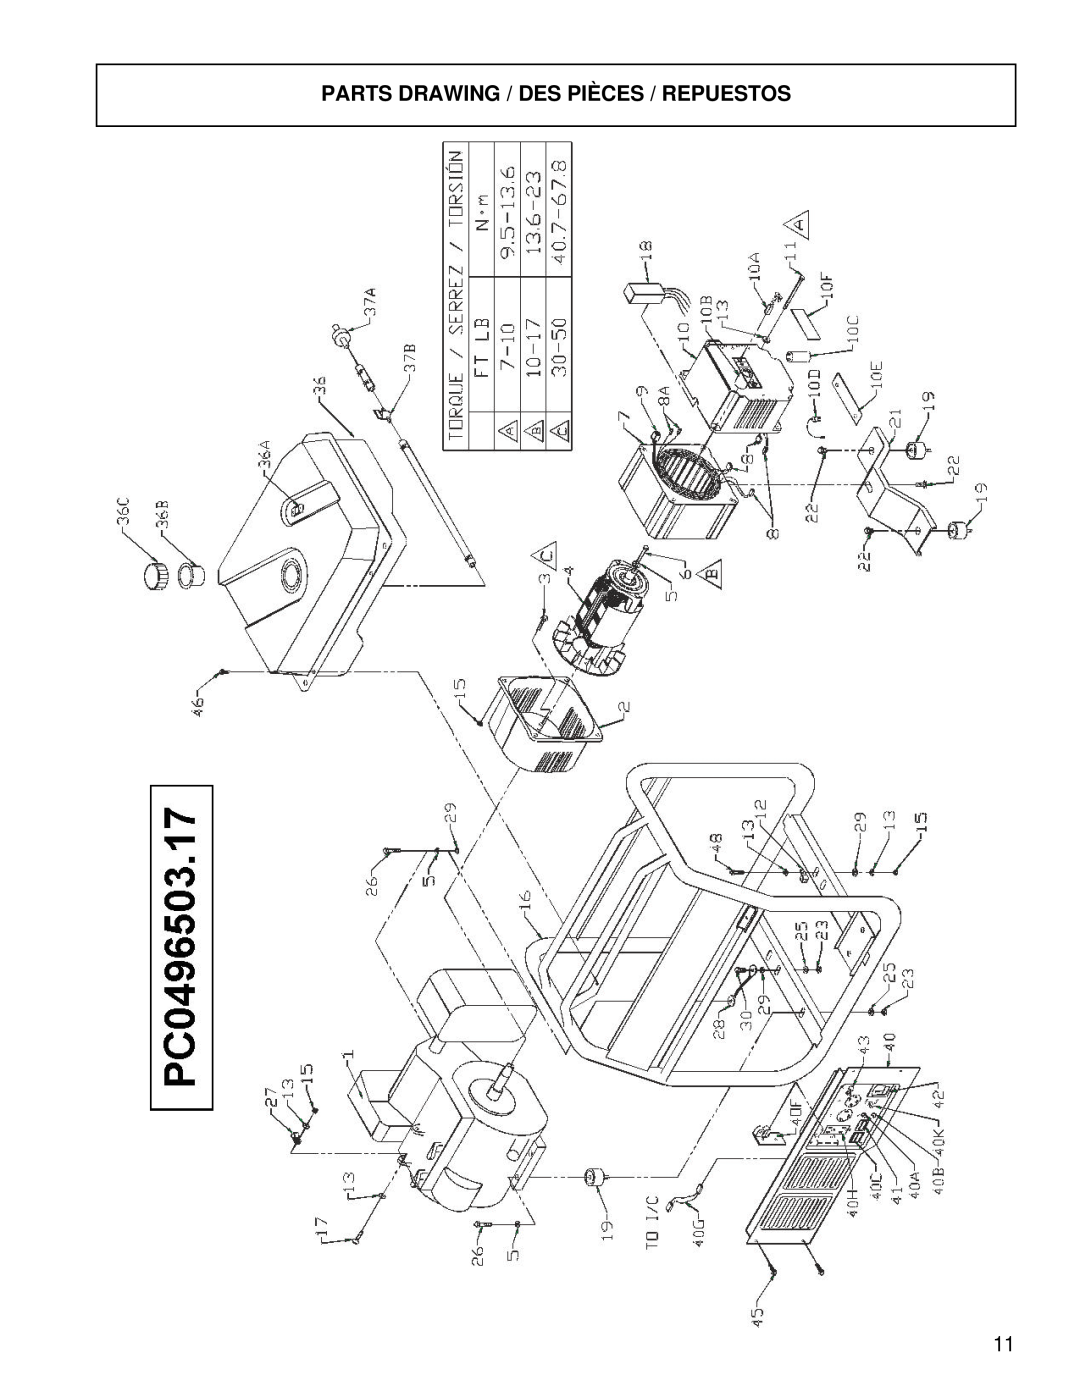 Powermate PC0496503.17 manual Parts Drawing / Des Pièces / Repuestos 